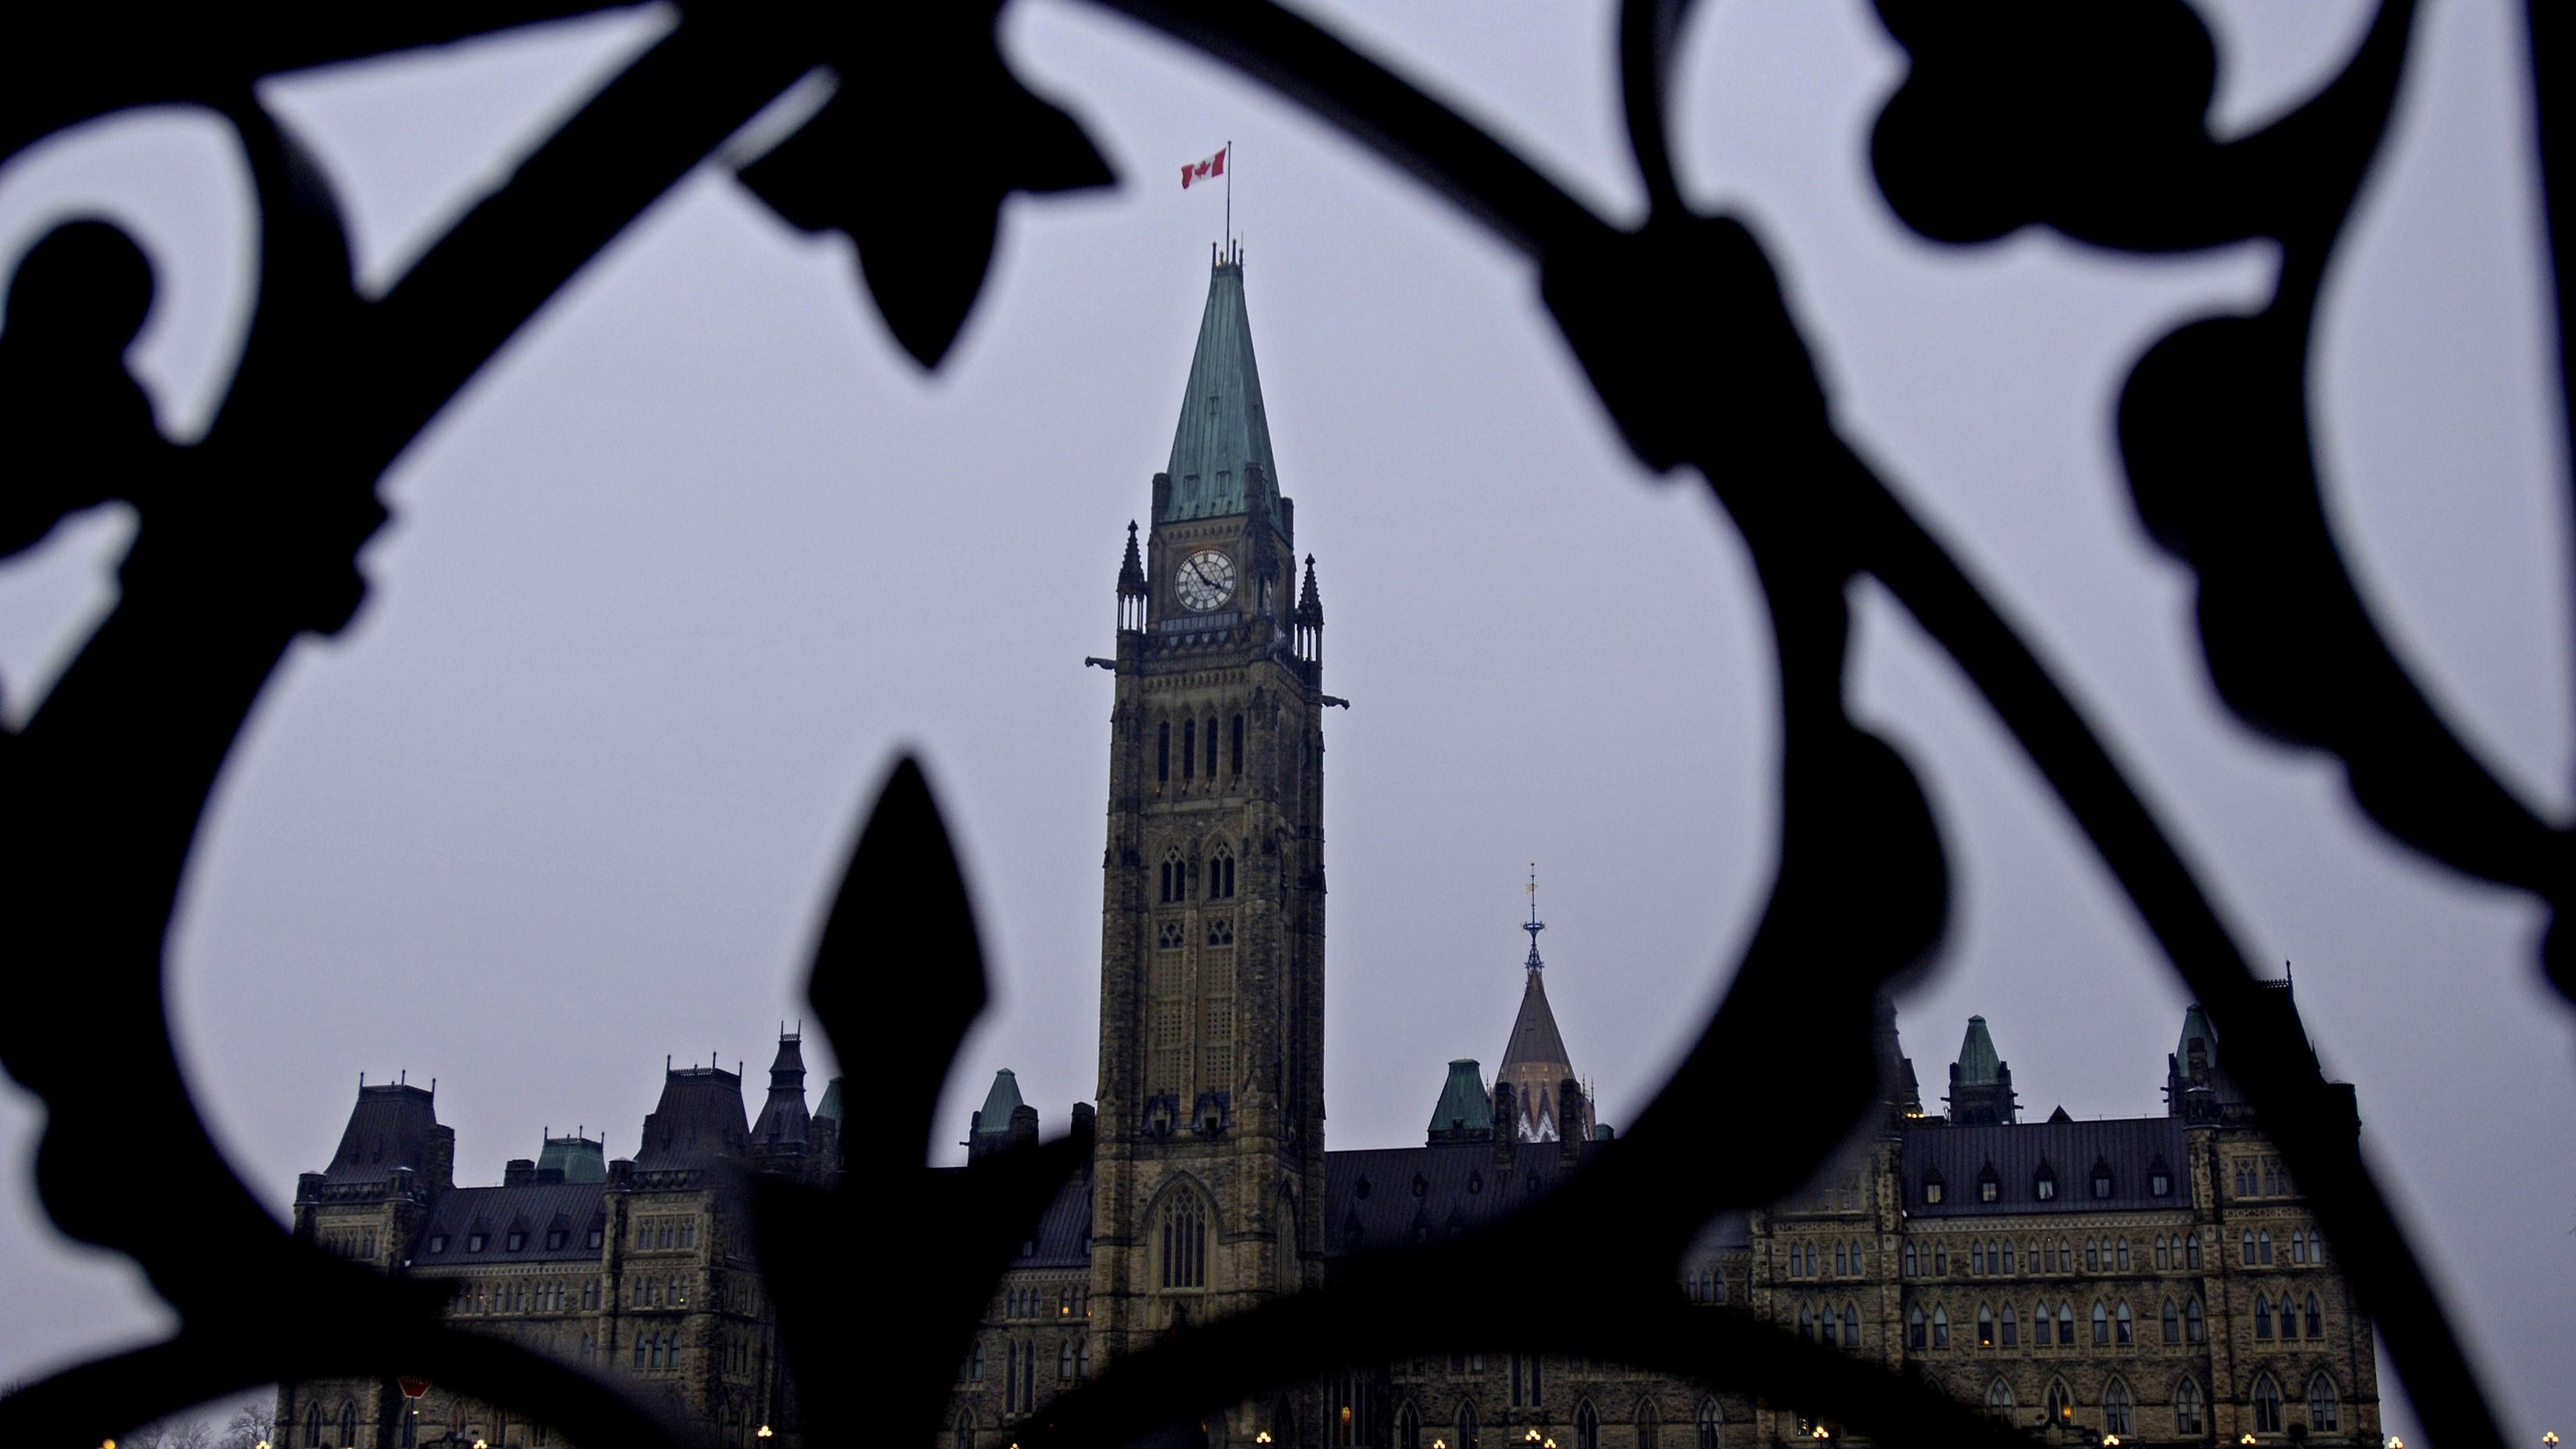 Yttrandefrihetsexperter och jurister i Kanada kritiserar ett nytt lagförslag som de menar kränker människors rättigheter. Foto: Simon Hayter/Getty Images